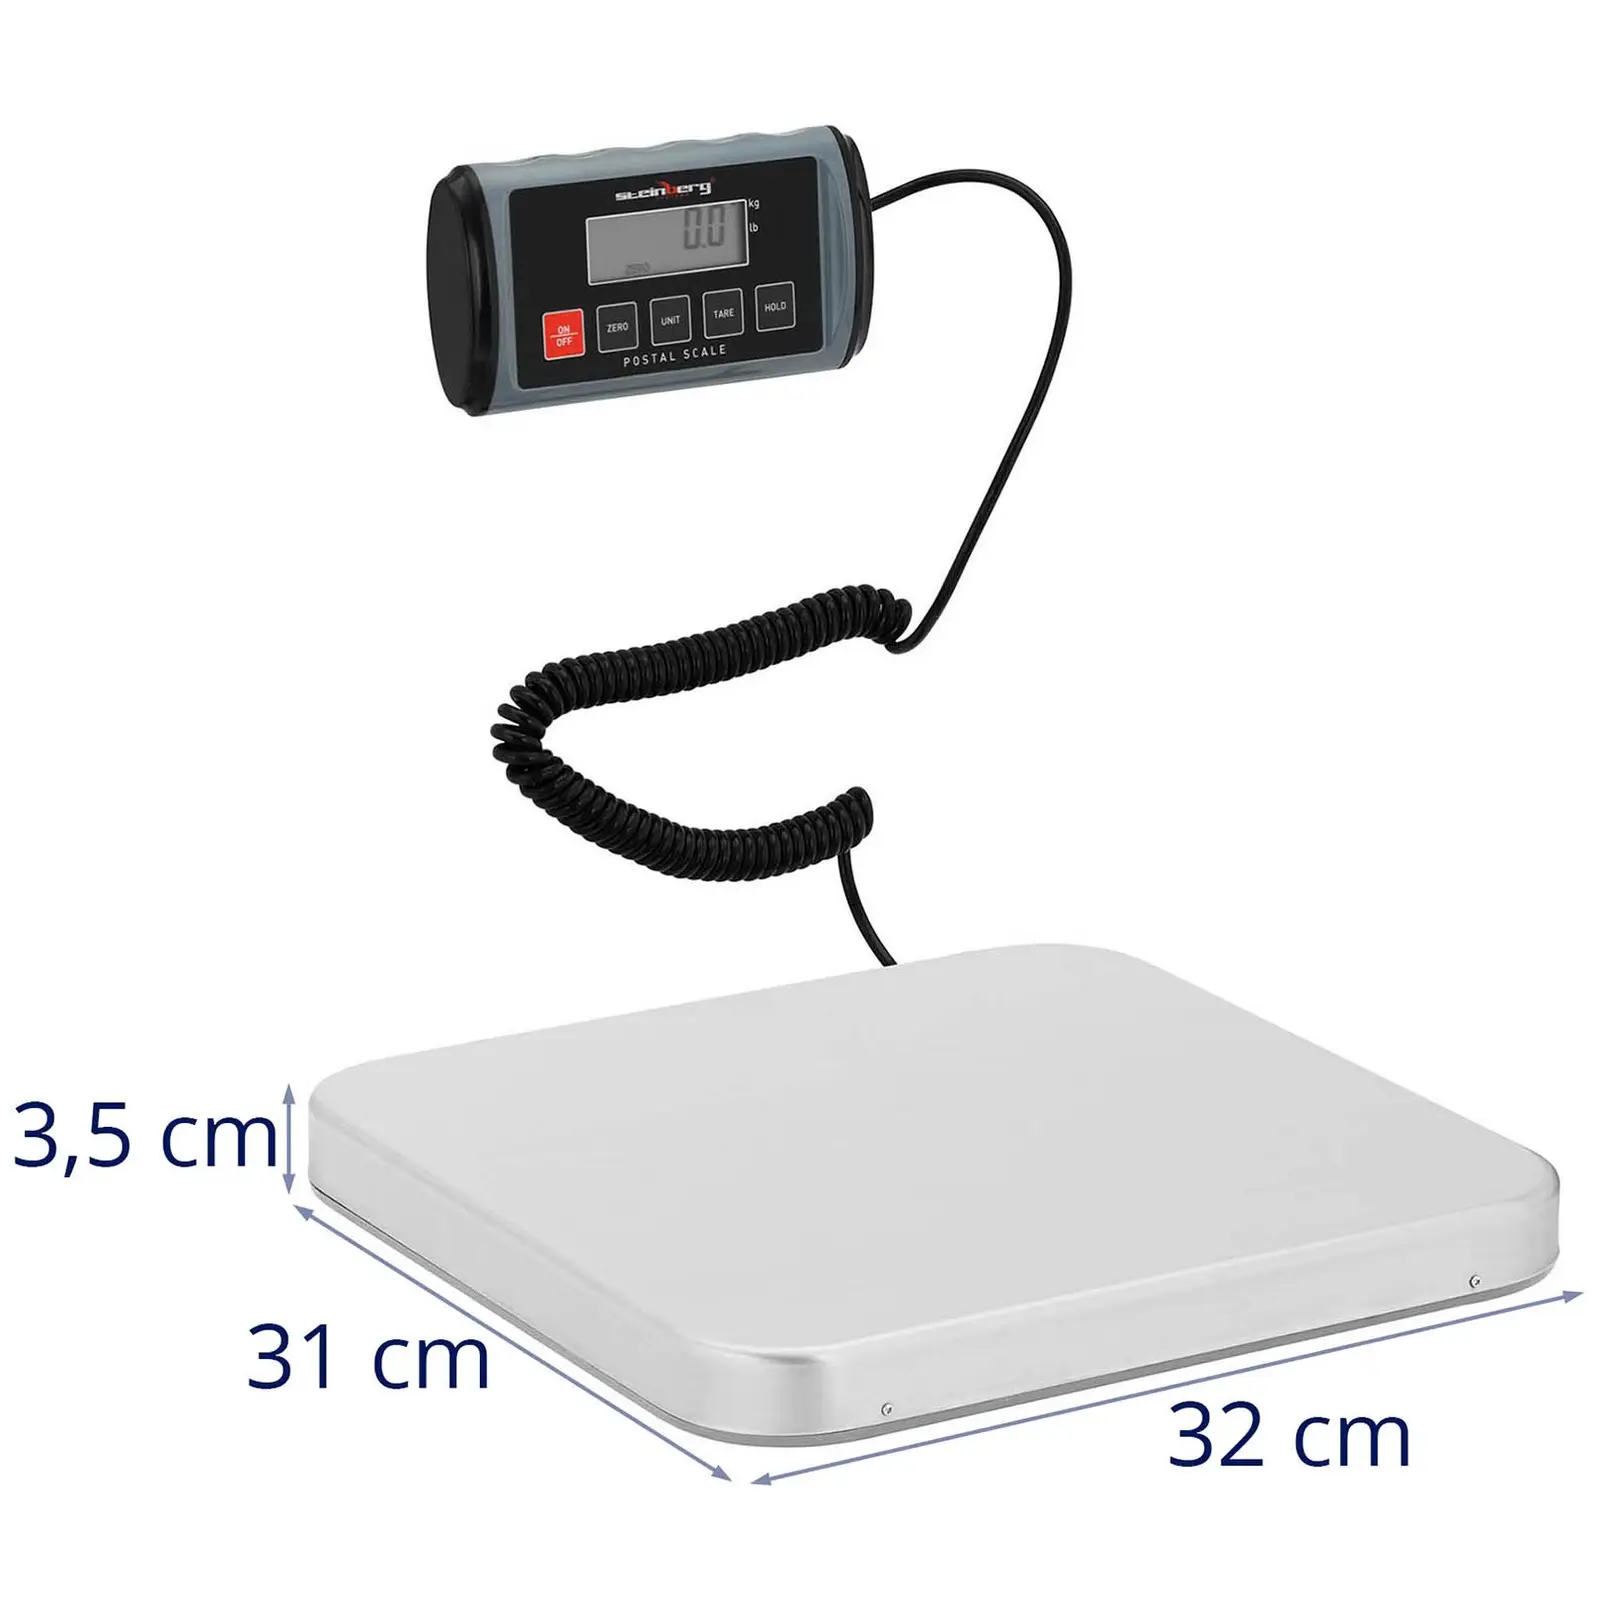 Tehtnica za pakete - 100 kg / 0,05 kg - 31 x 32 cm - zunanji LCD